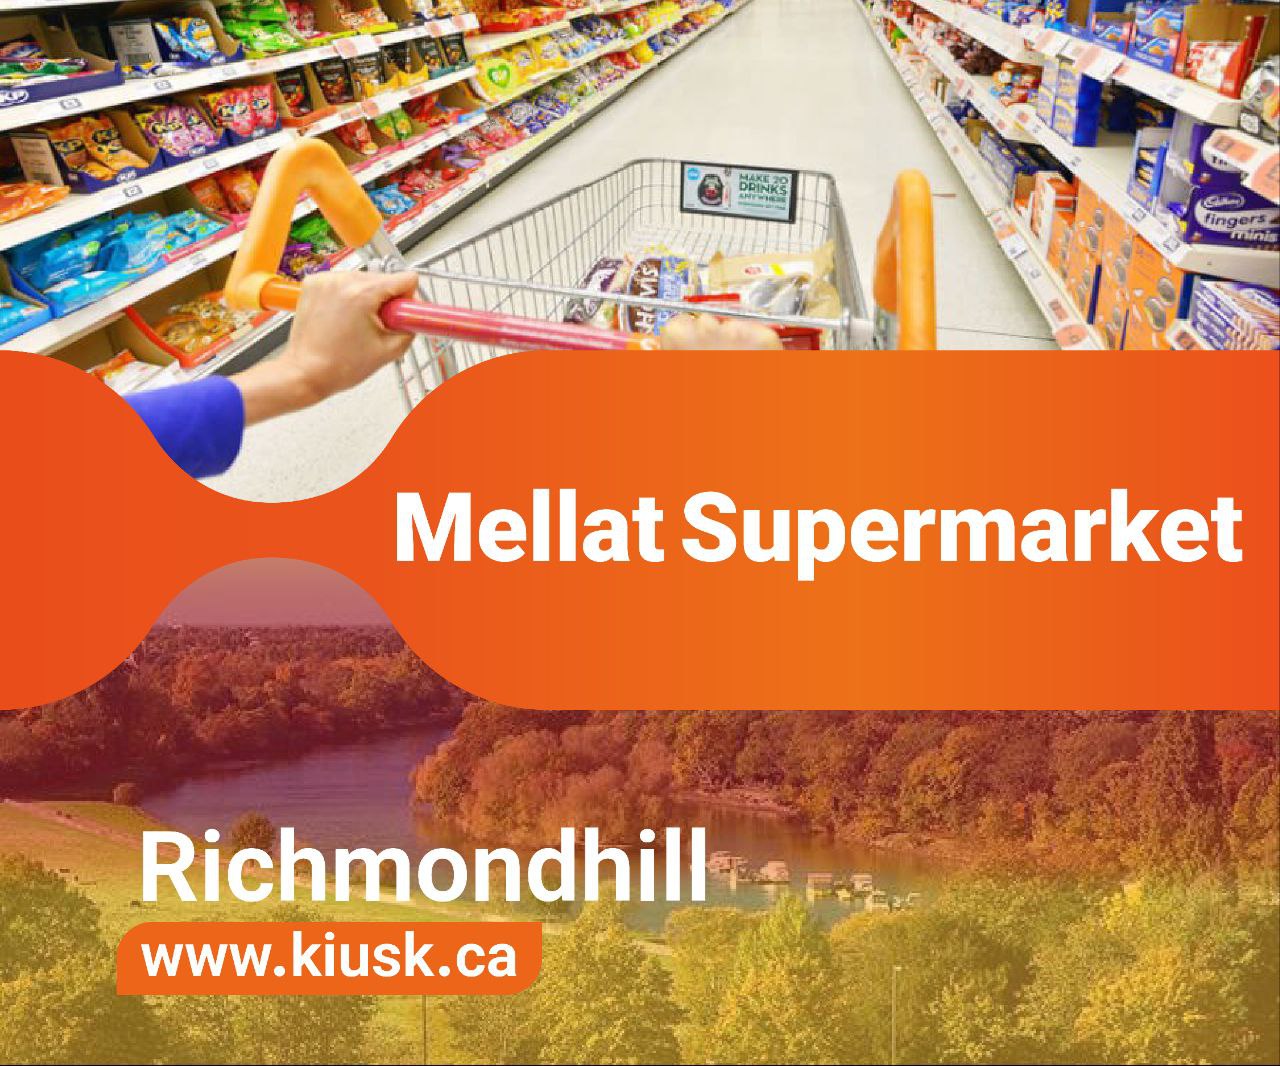 Mellat Supermarket in Richmond Hill